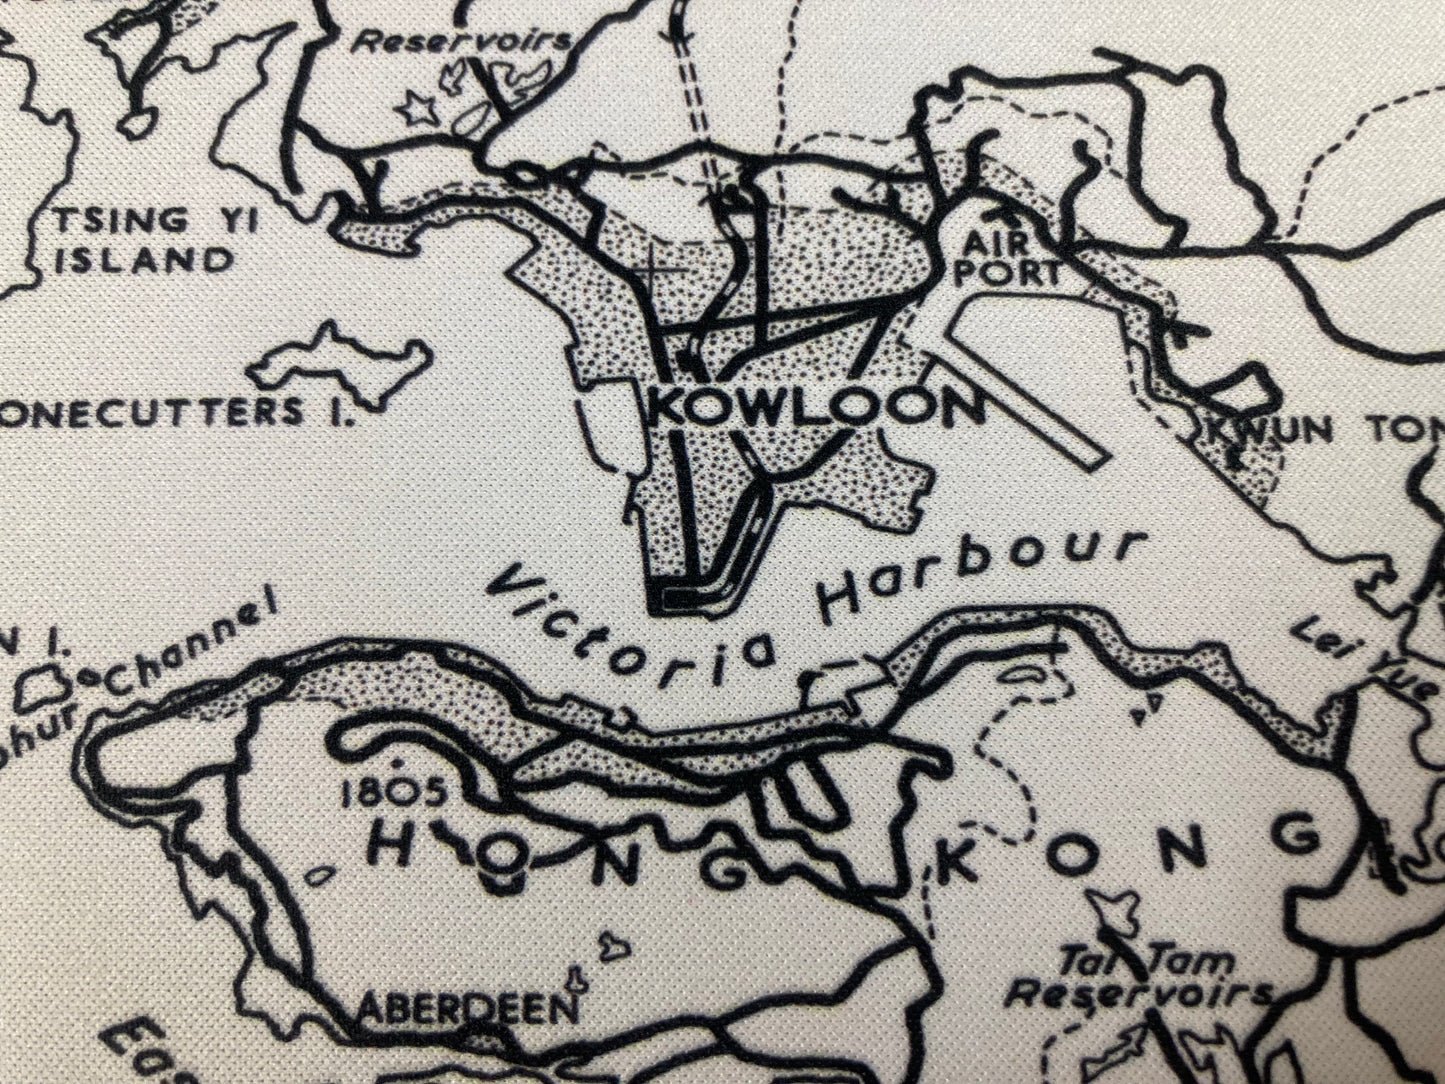 1962 Nostalgic Hong Kong Remake Map Mouse Pad 